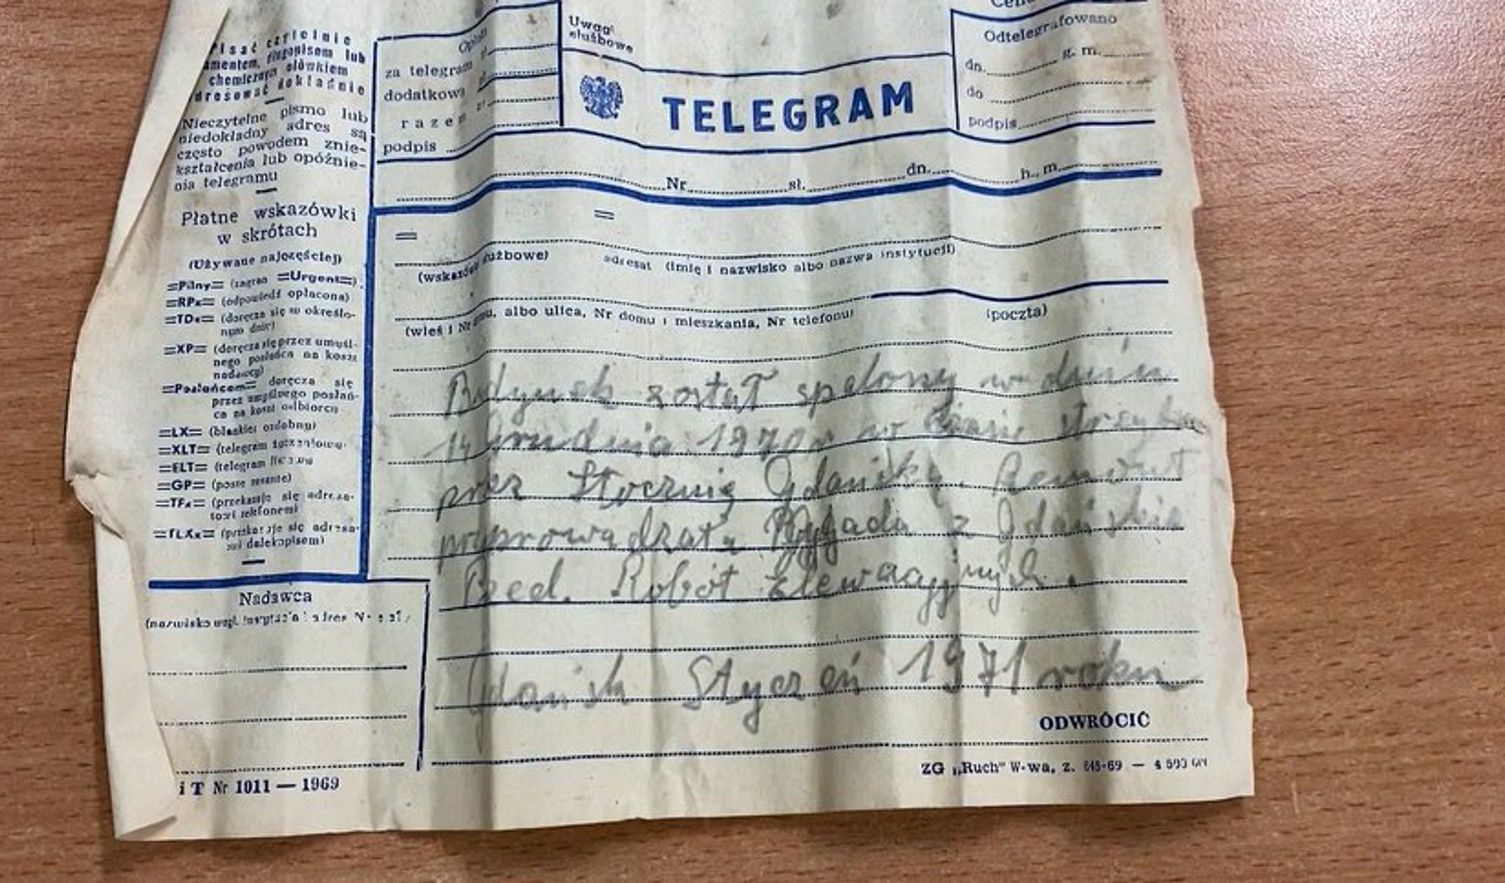 Niezwykłe odkrycie w ścianie dworca. Butelka z telegramem z 1971 r.